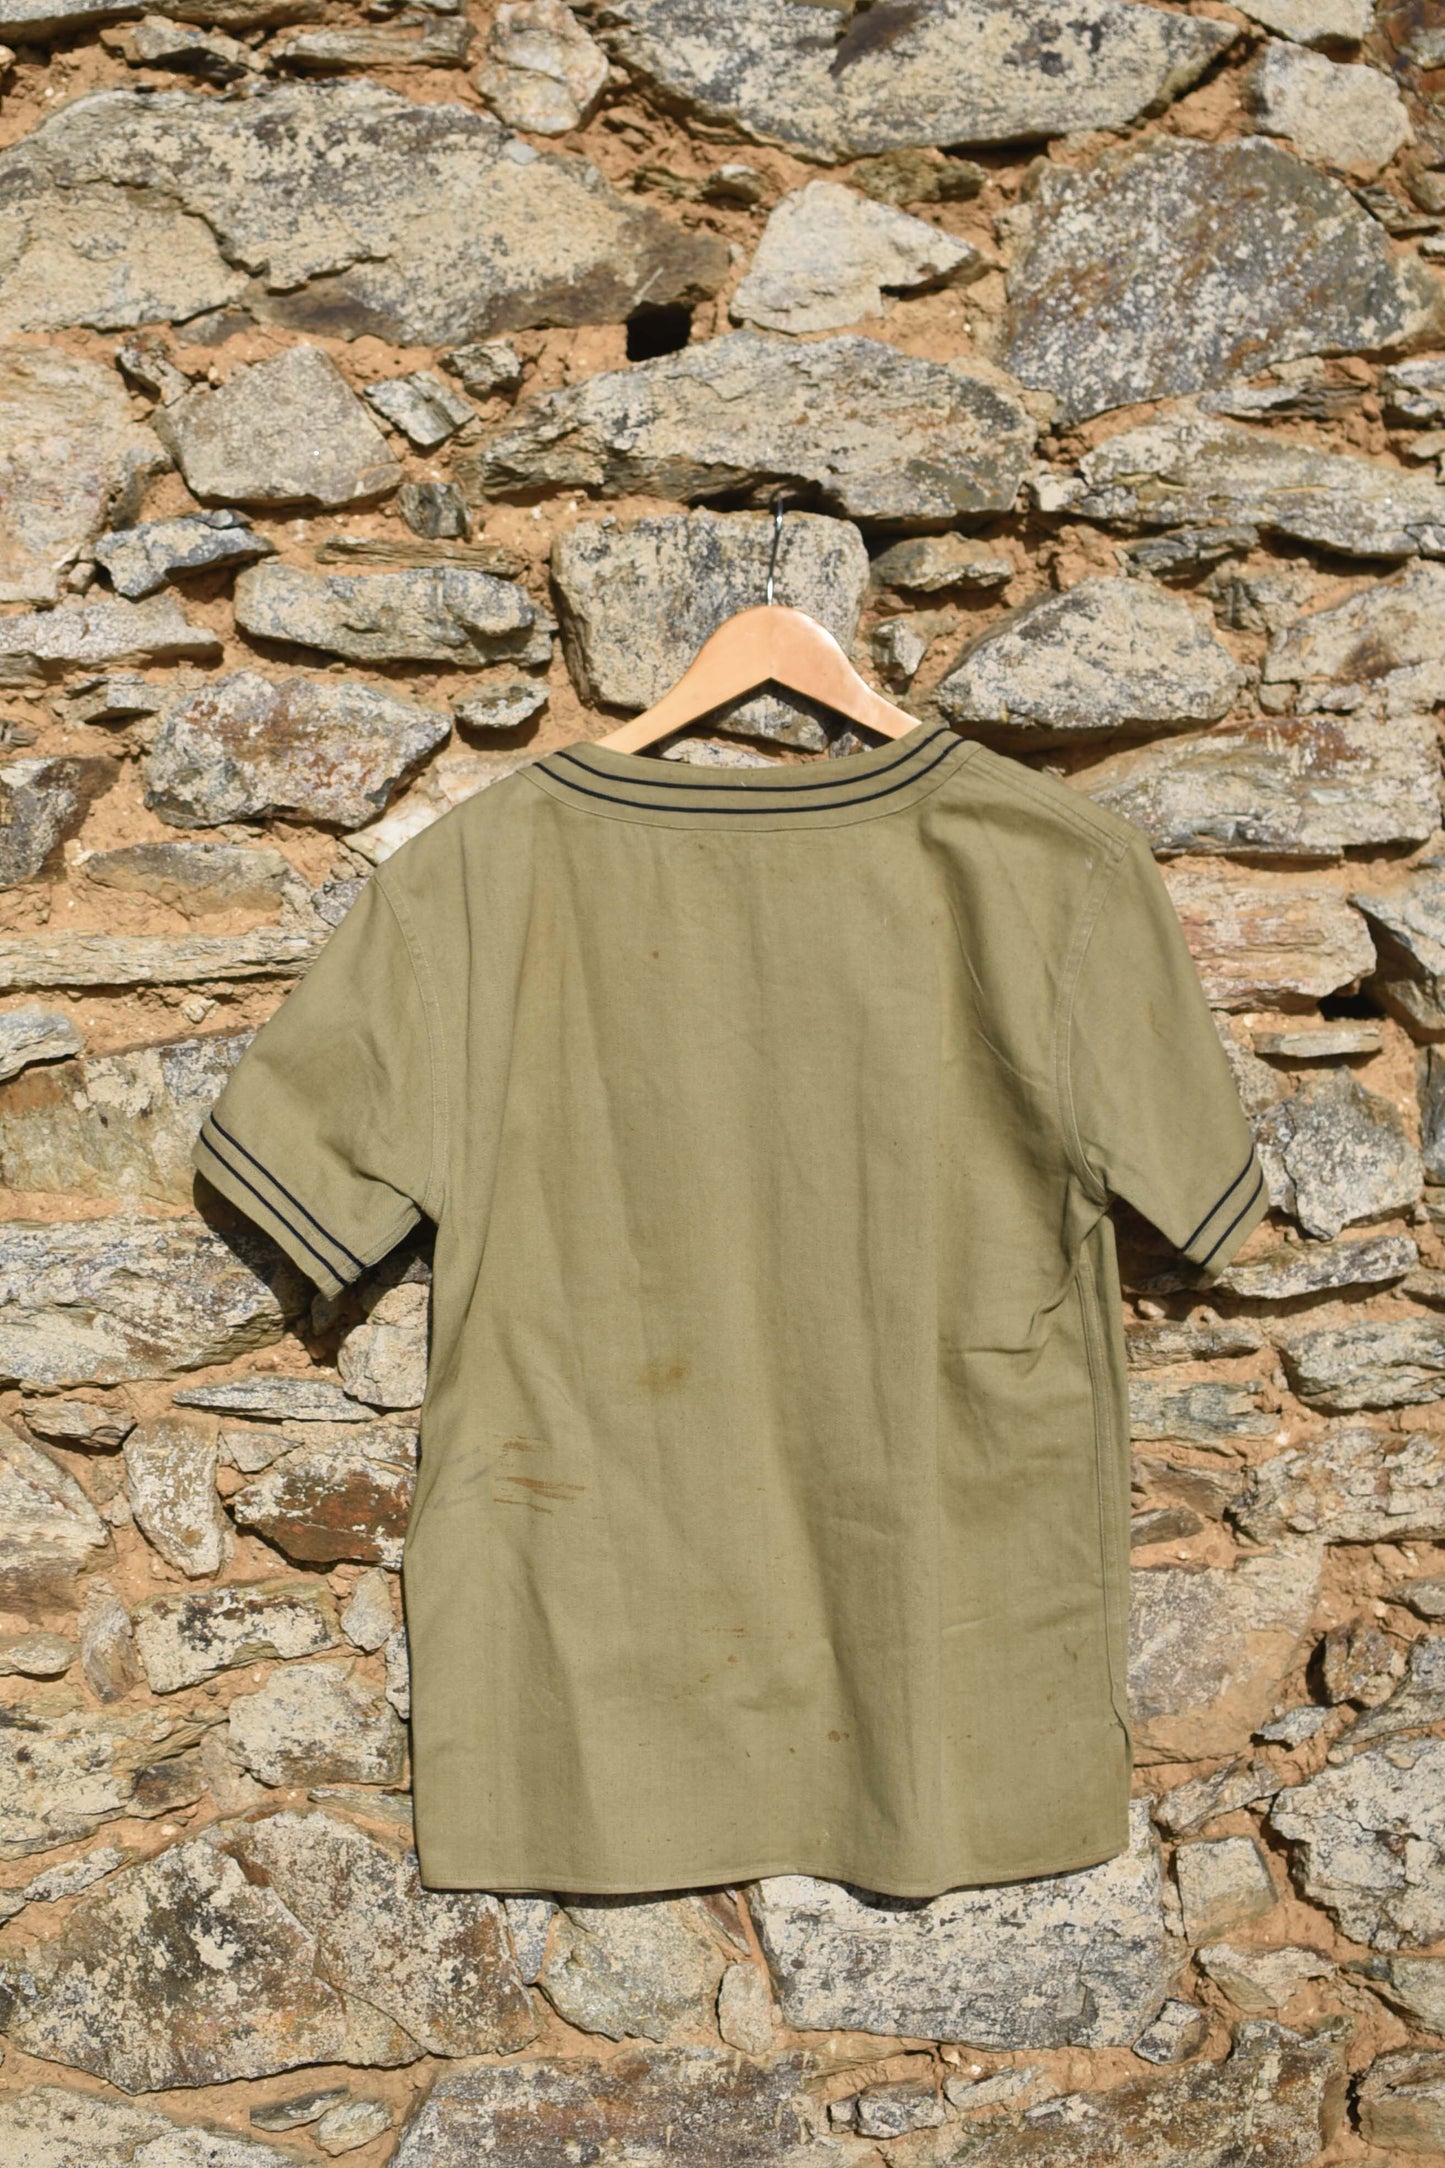 30's/40'S french sailor shirt / Marinière années 30/40 marine nationale